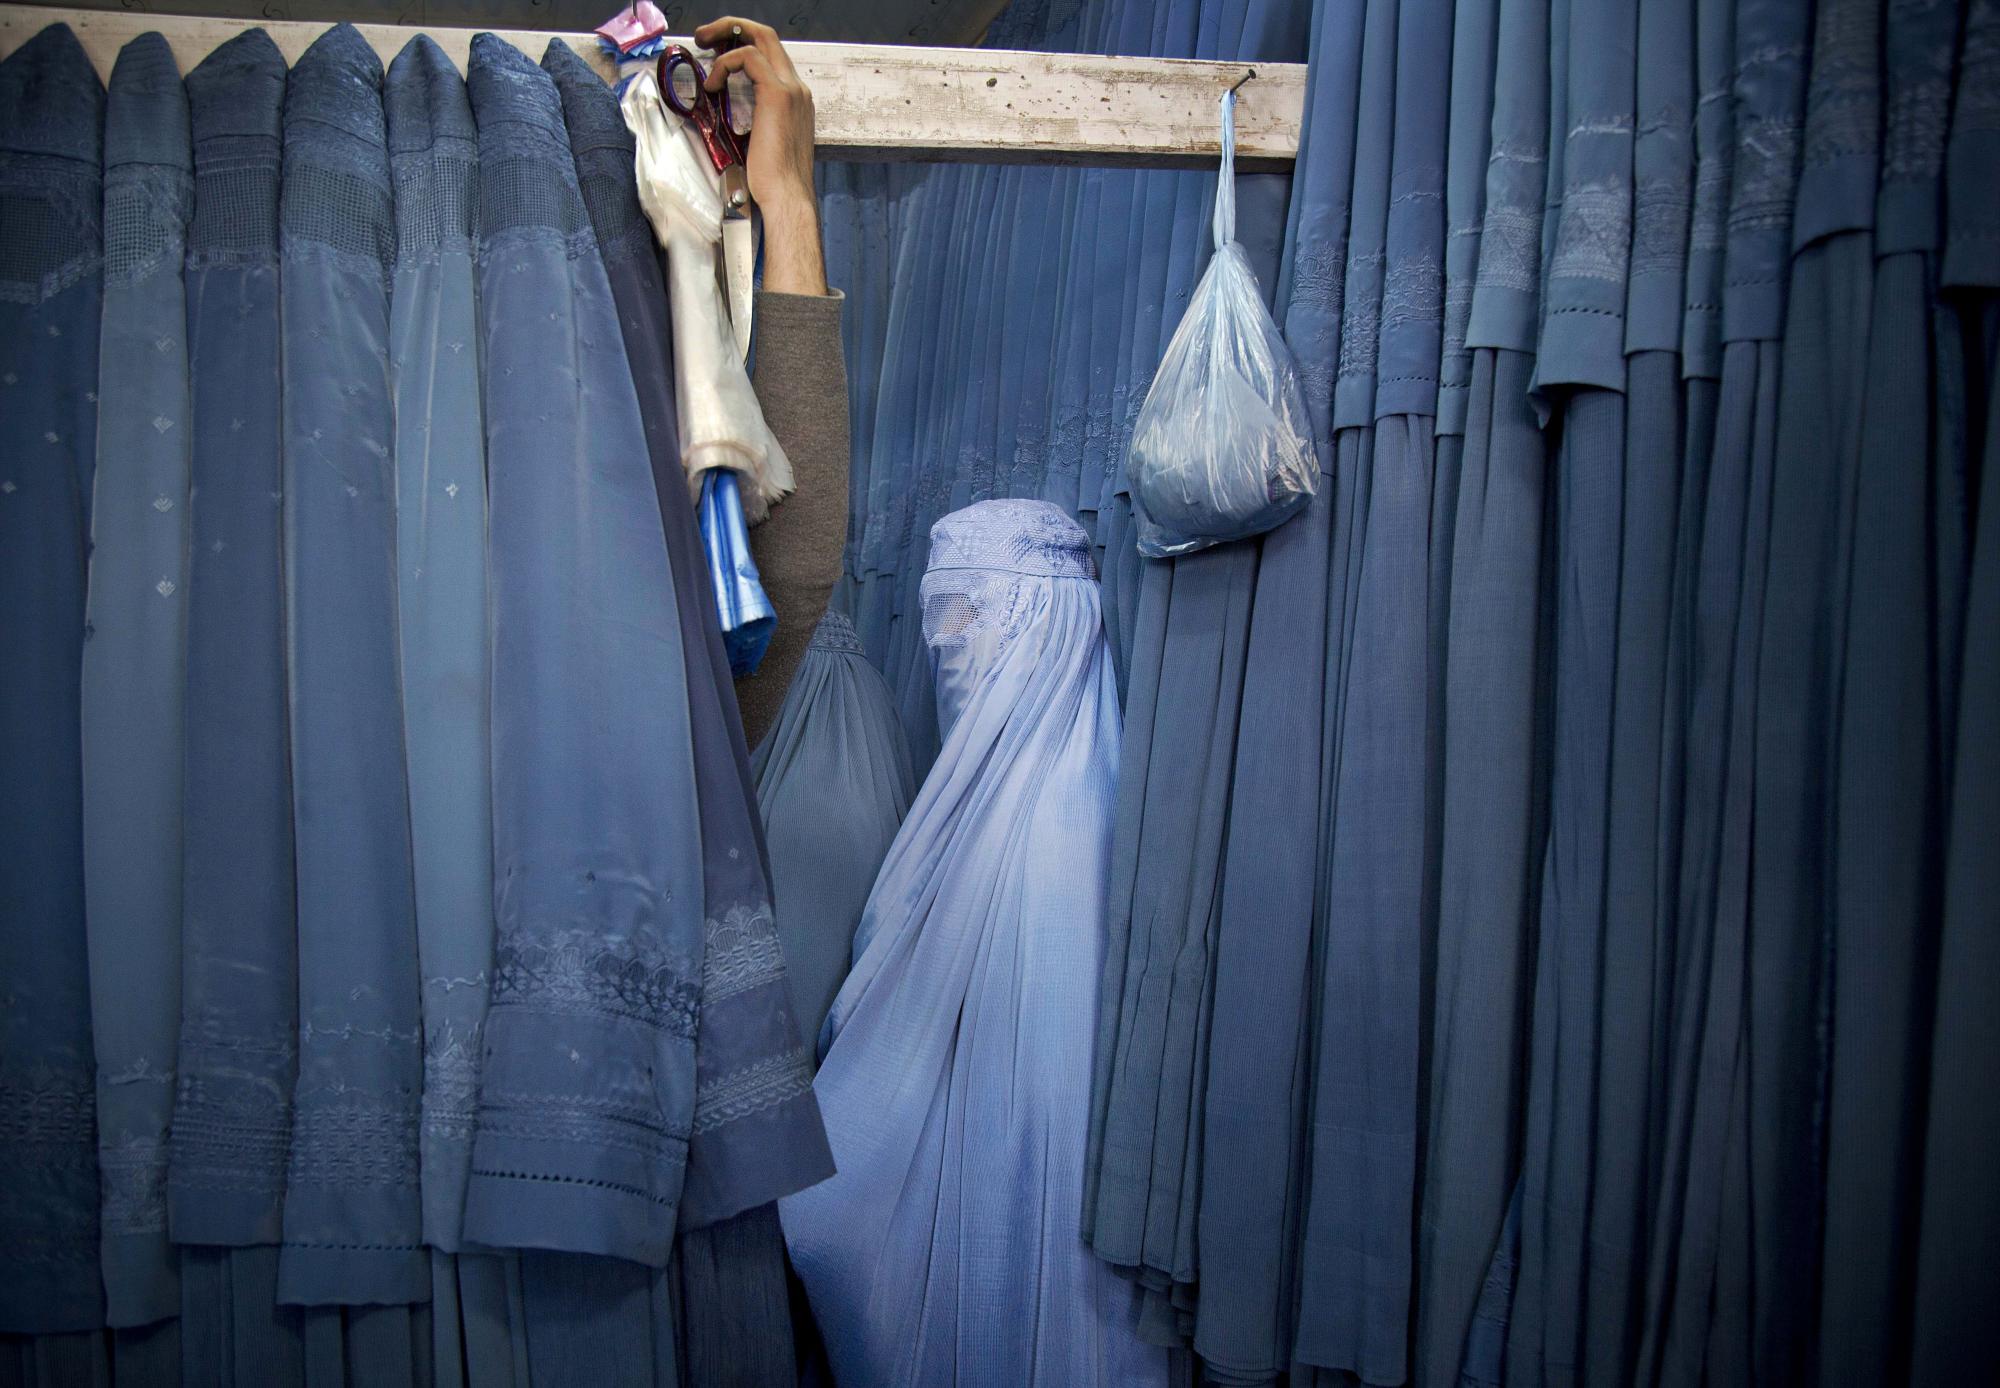 Una mujer afgana espera en un vestuario para probar un nuevo burka, en una tienda en la ciudad vieja de Kabul, Afganistán, el jueves 11 de abril de 2013. Antes de que los talibanes tomaran el poder en Afganistán, el burka se usaba con poca frecuencia en las ciudades. Mientras estuvieron en el poder, los talibanes exigieron el uso de un burka en público. (Foto AP / Anja Niedringhaus)